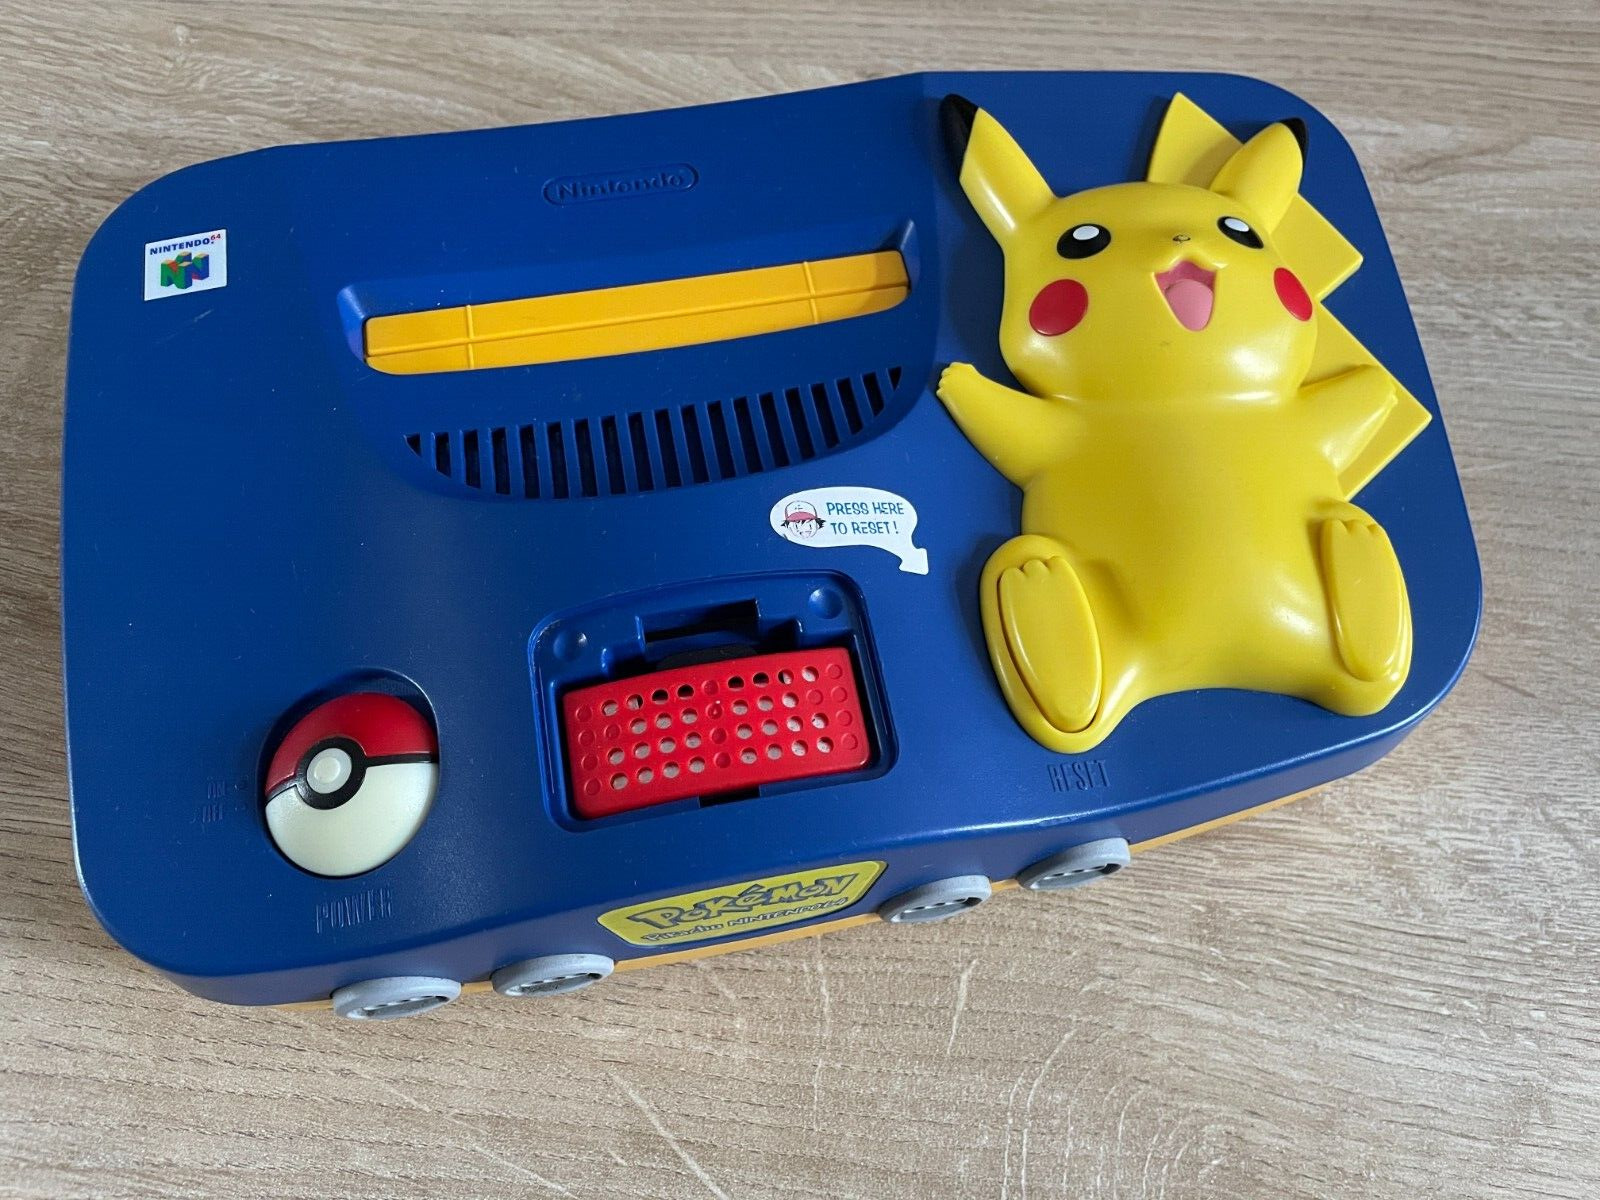 Console Nintendo 64 Edition Limitée pikachu (NUS-EUR-1)